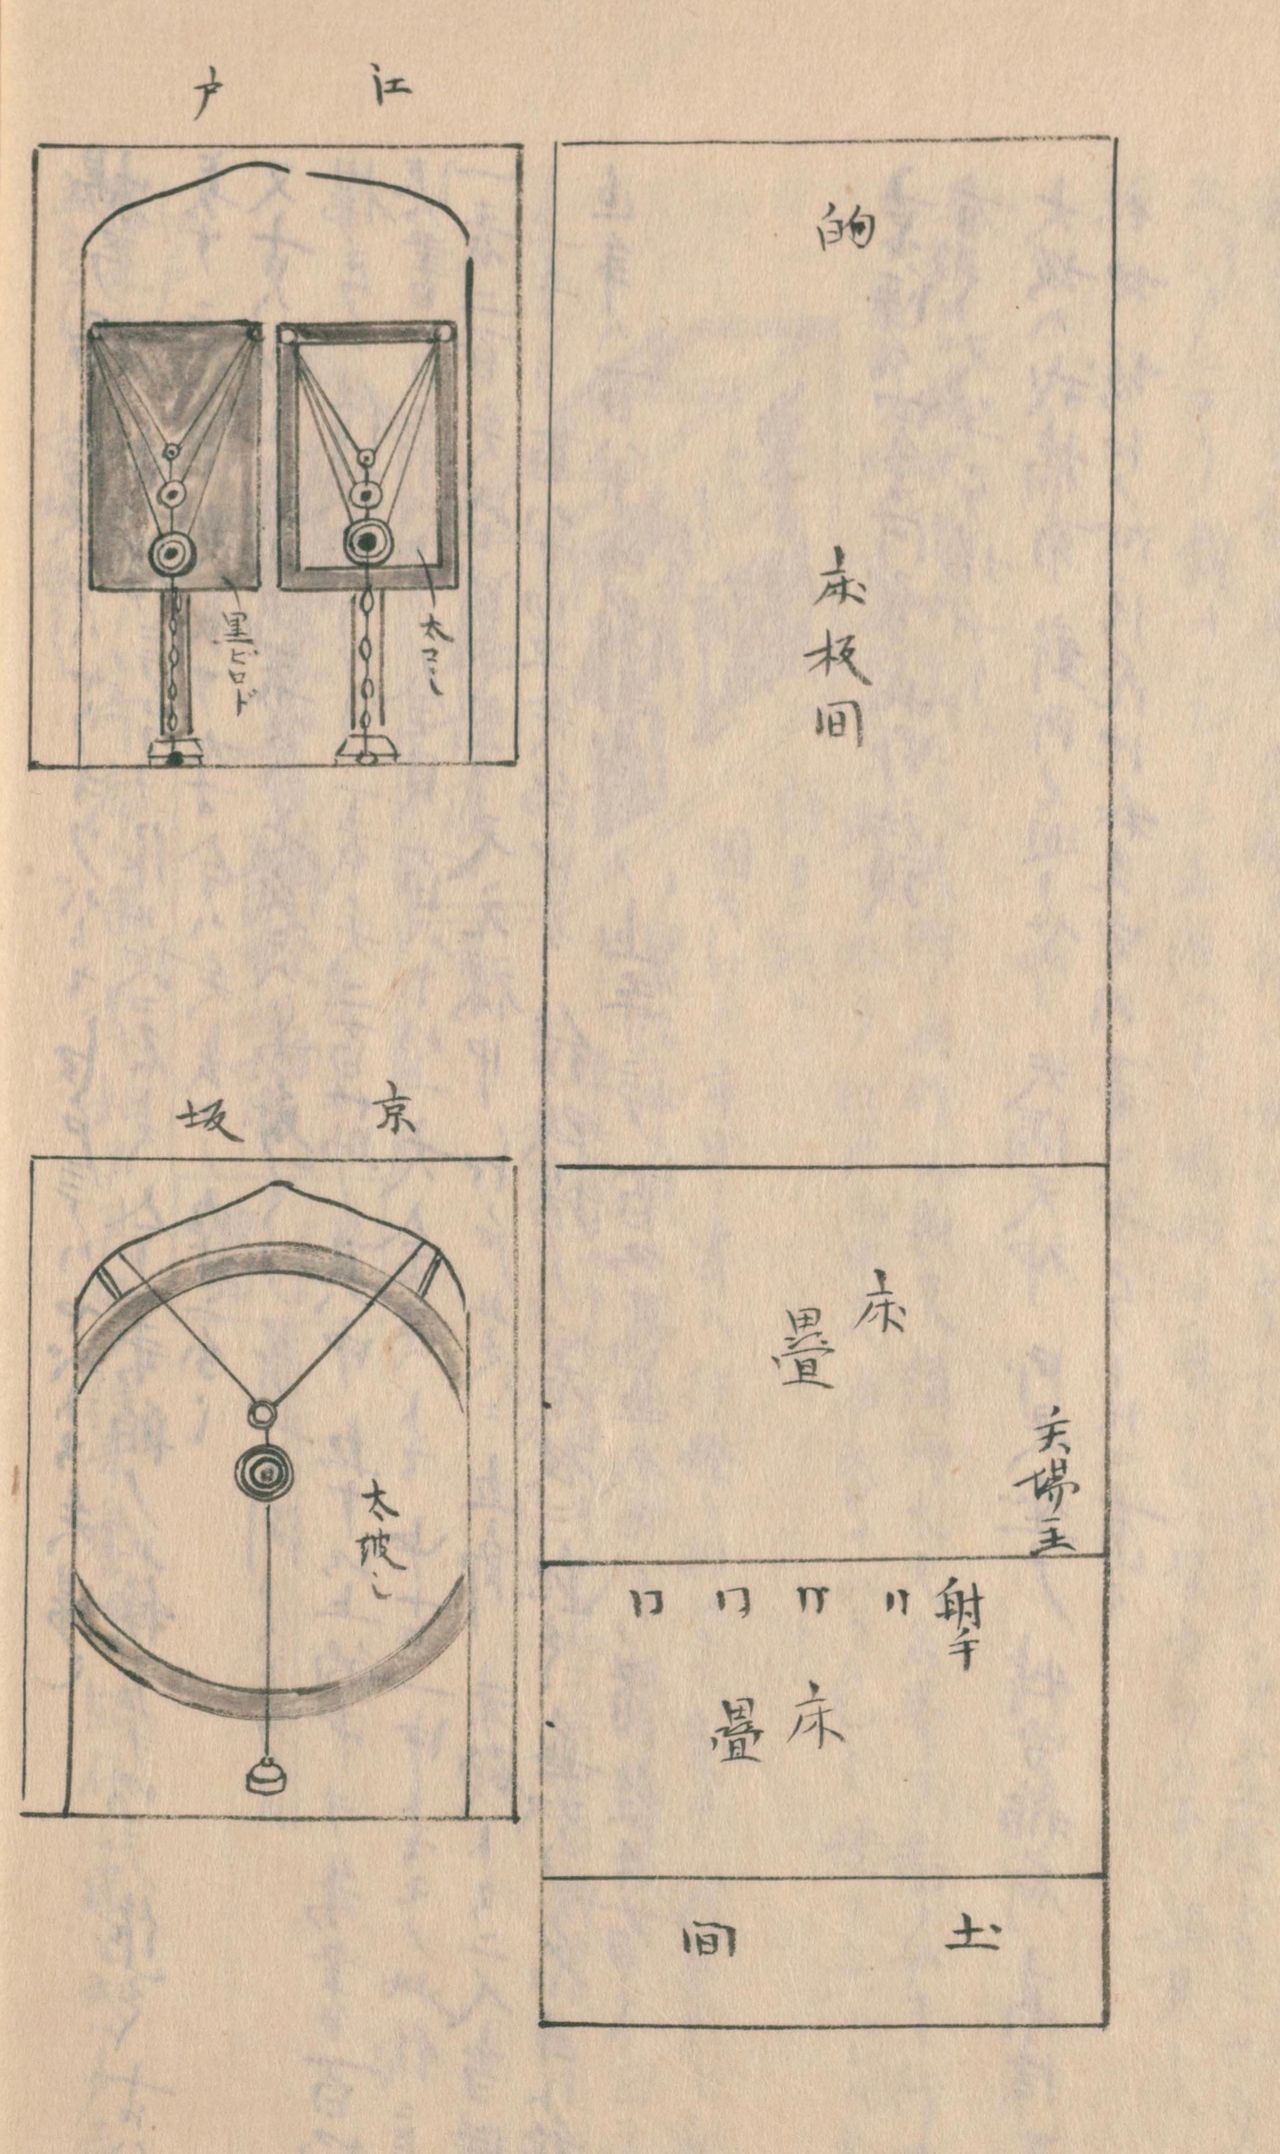 A la derecha, un esquema de un yōkyūba (lugar de práctica del tiro con arco); a la izquierda, detalles de los blancos tal como eran en Edo (arriba) y en el área de Kioto-Osaka (abajo). En Edo, los blancos eran tres (grande, mediano y pequeño) y estaban colocados sobre una tabla. En Kioto-Osaka, había un único blanco. Al dar en él se hacía sonar un cascabel colgante.